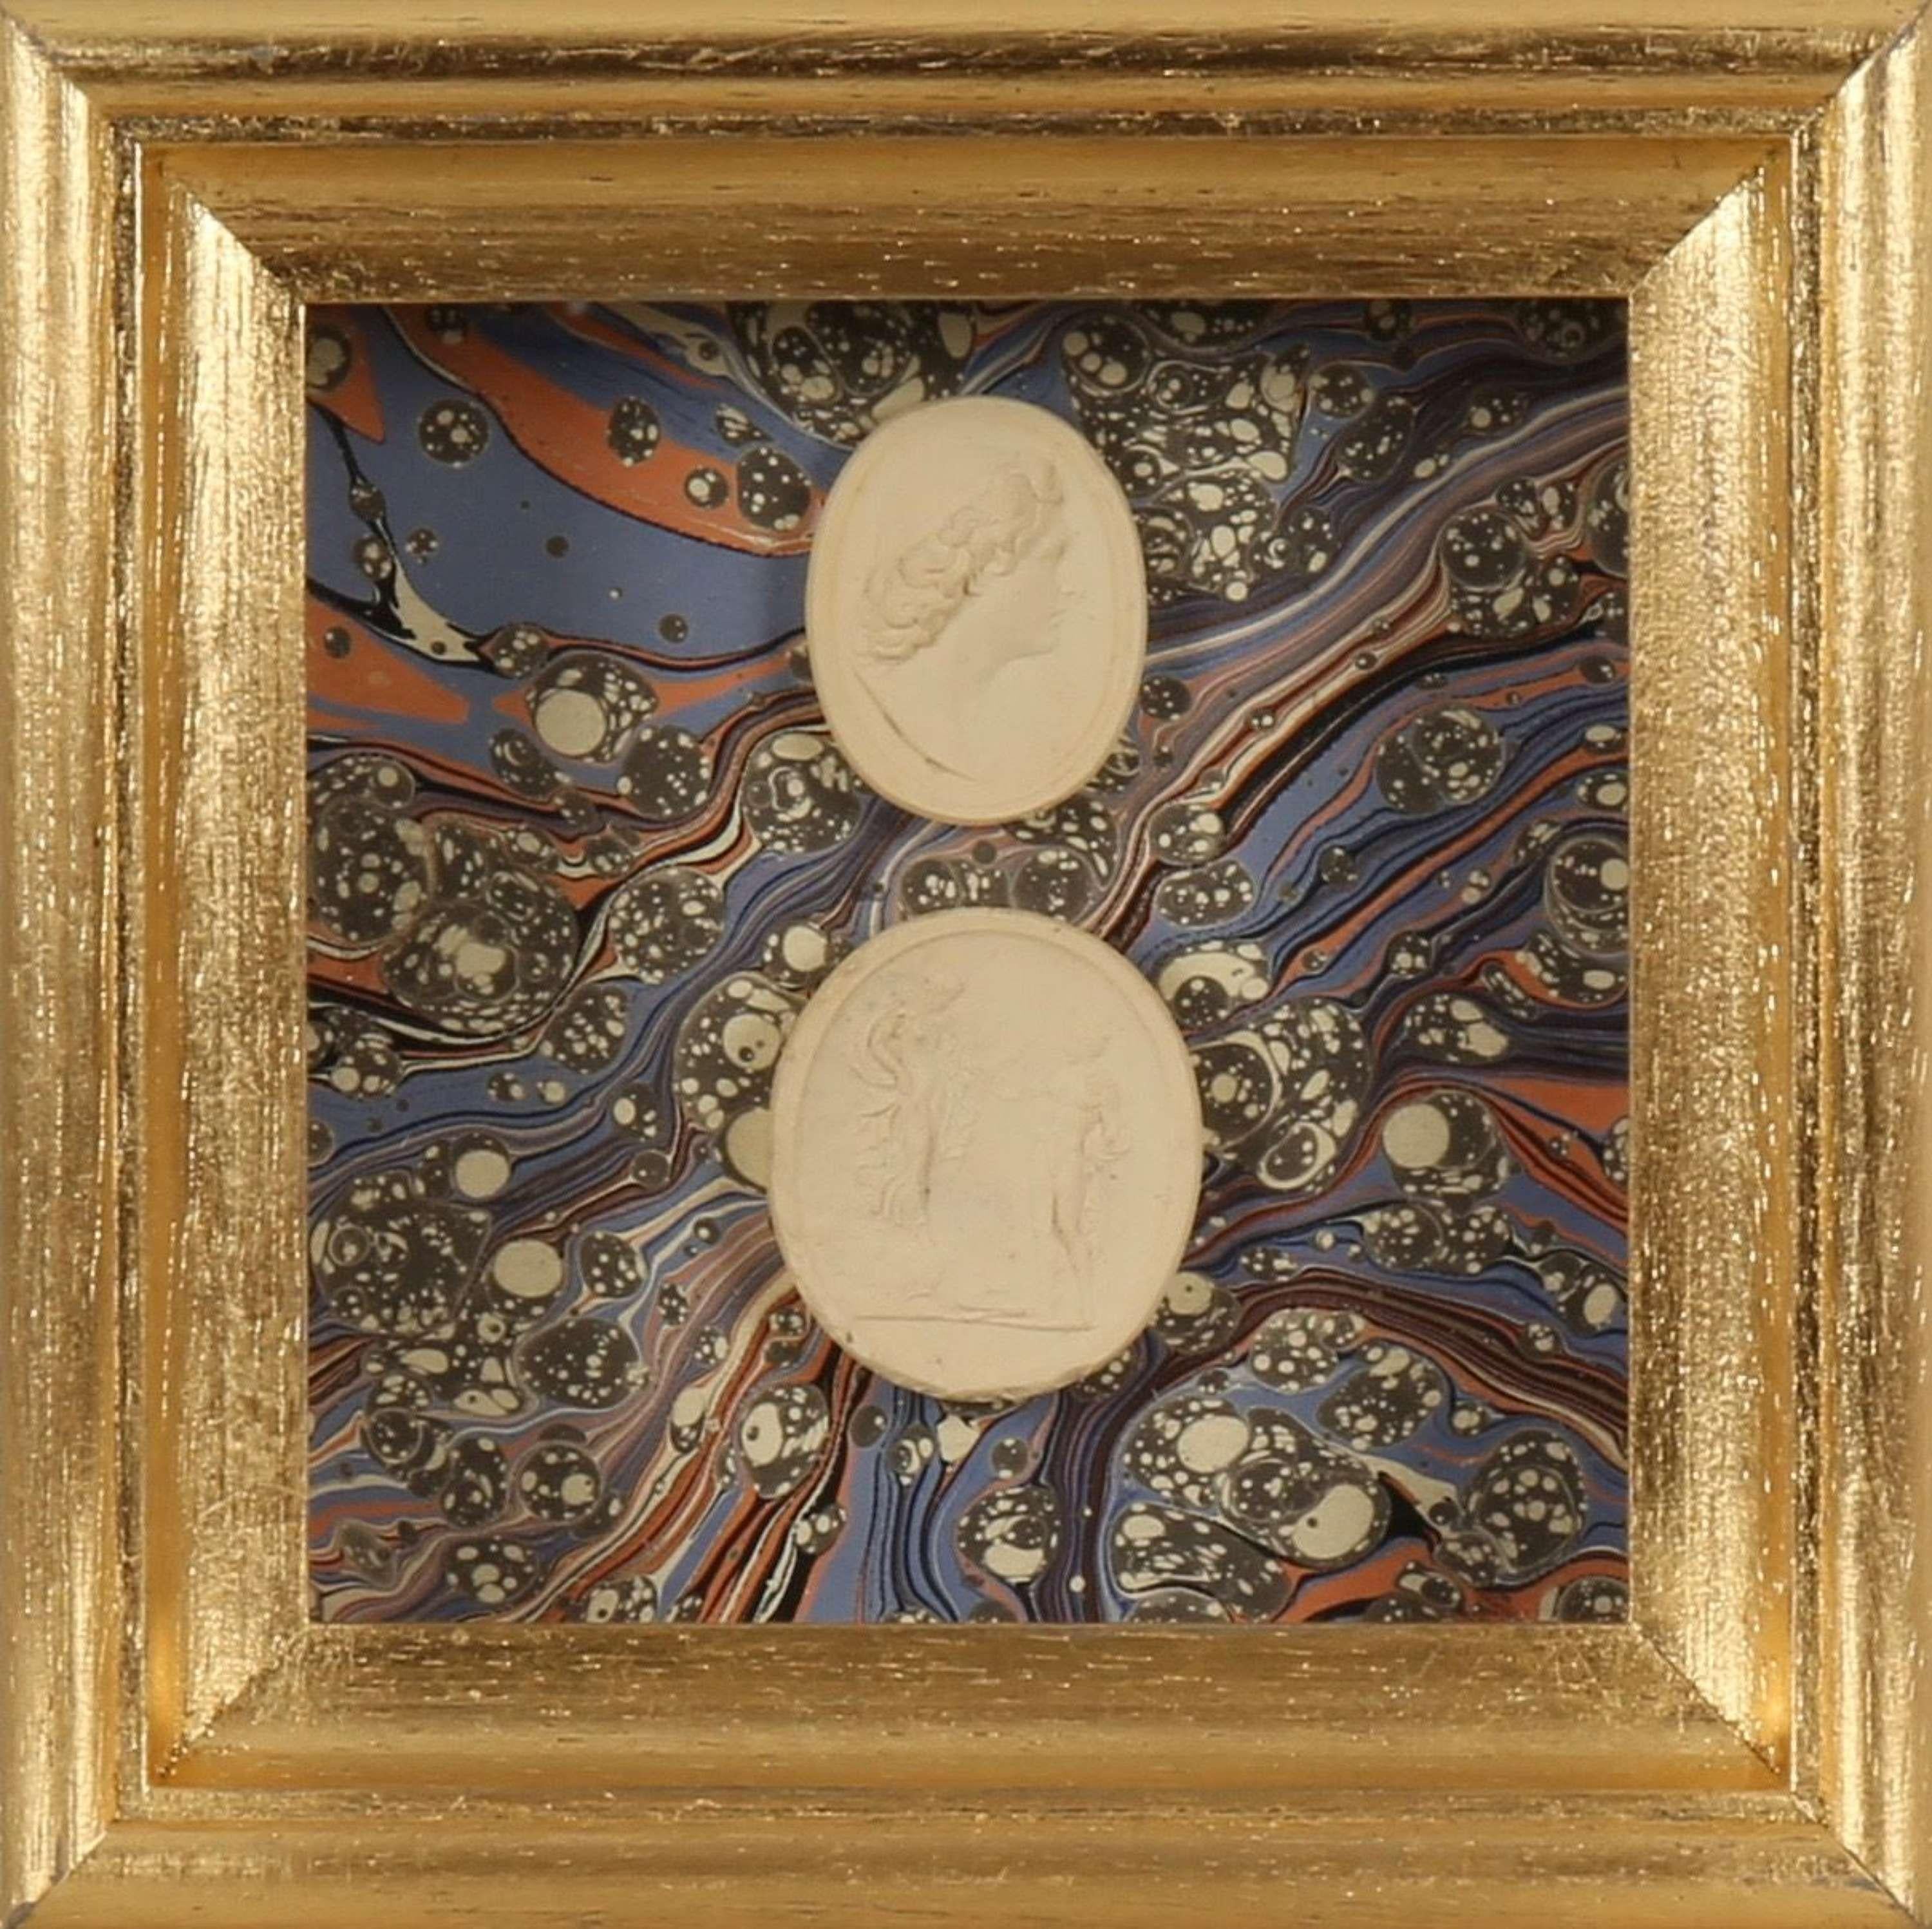 Paoletti Impronte, ‘Mussei Diversi’ Plaster Cameo Seal, Rome c1800